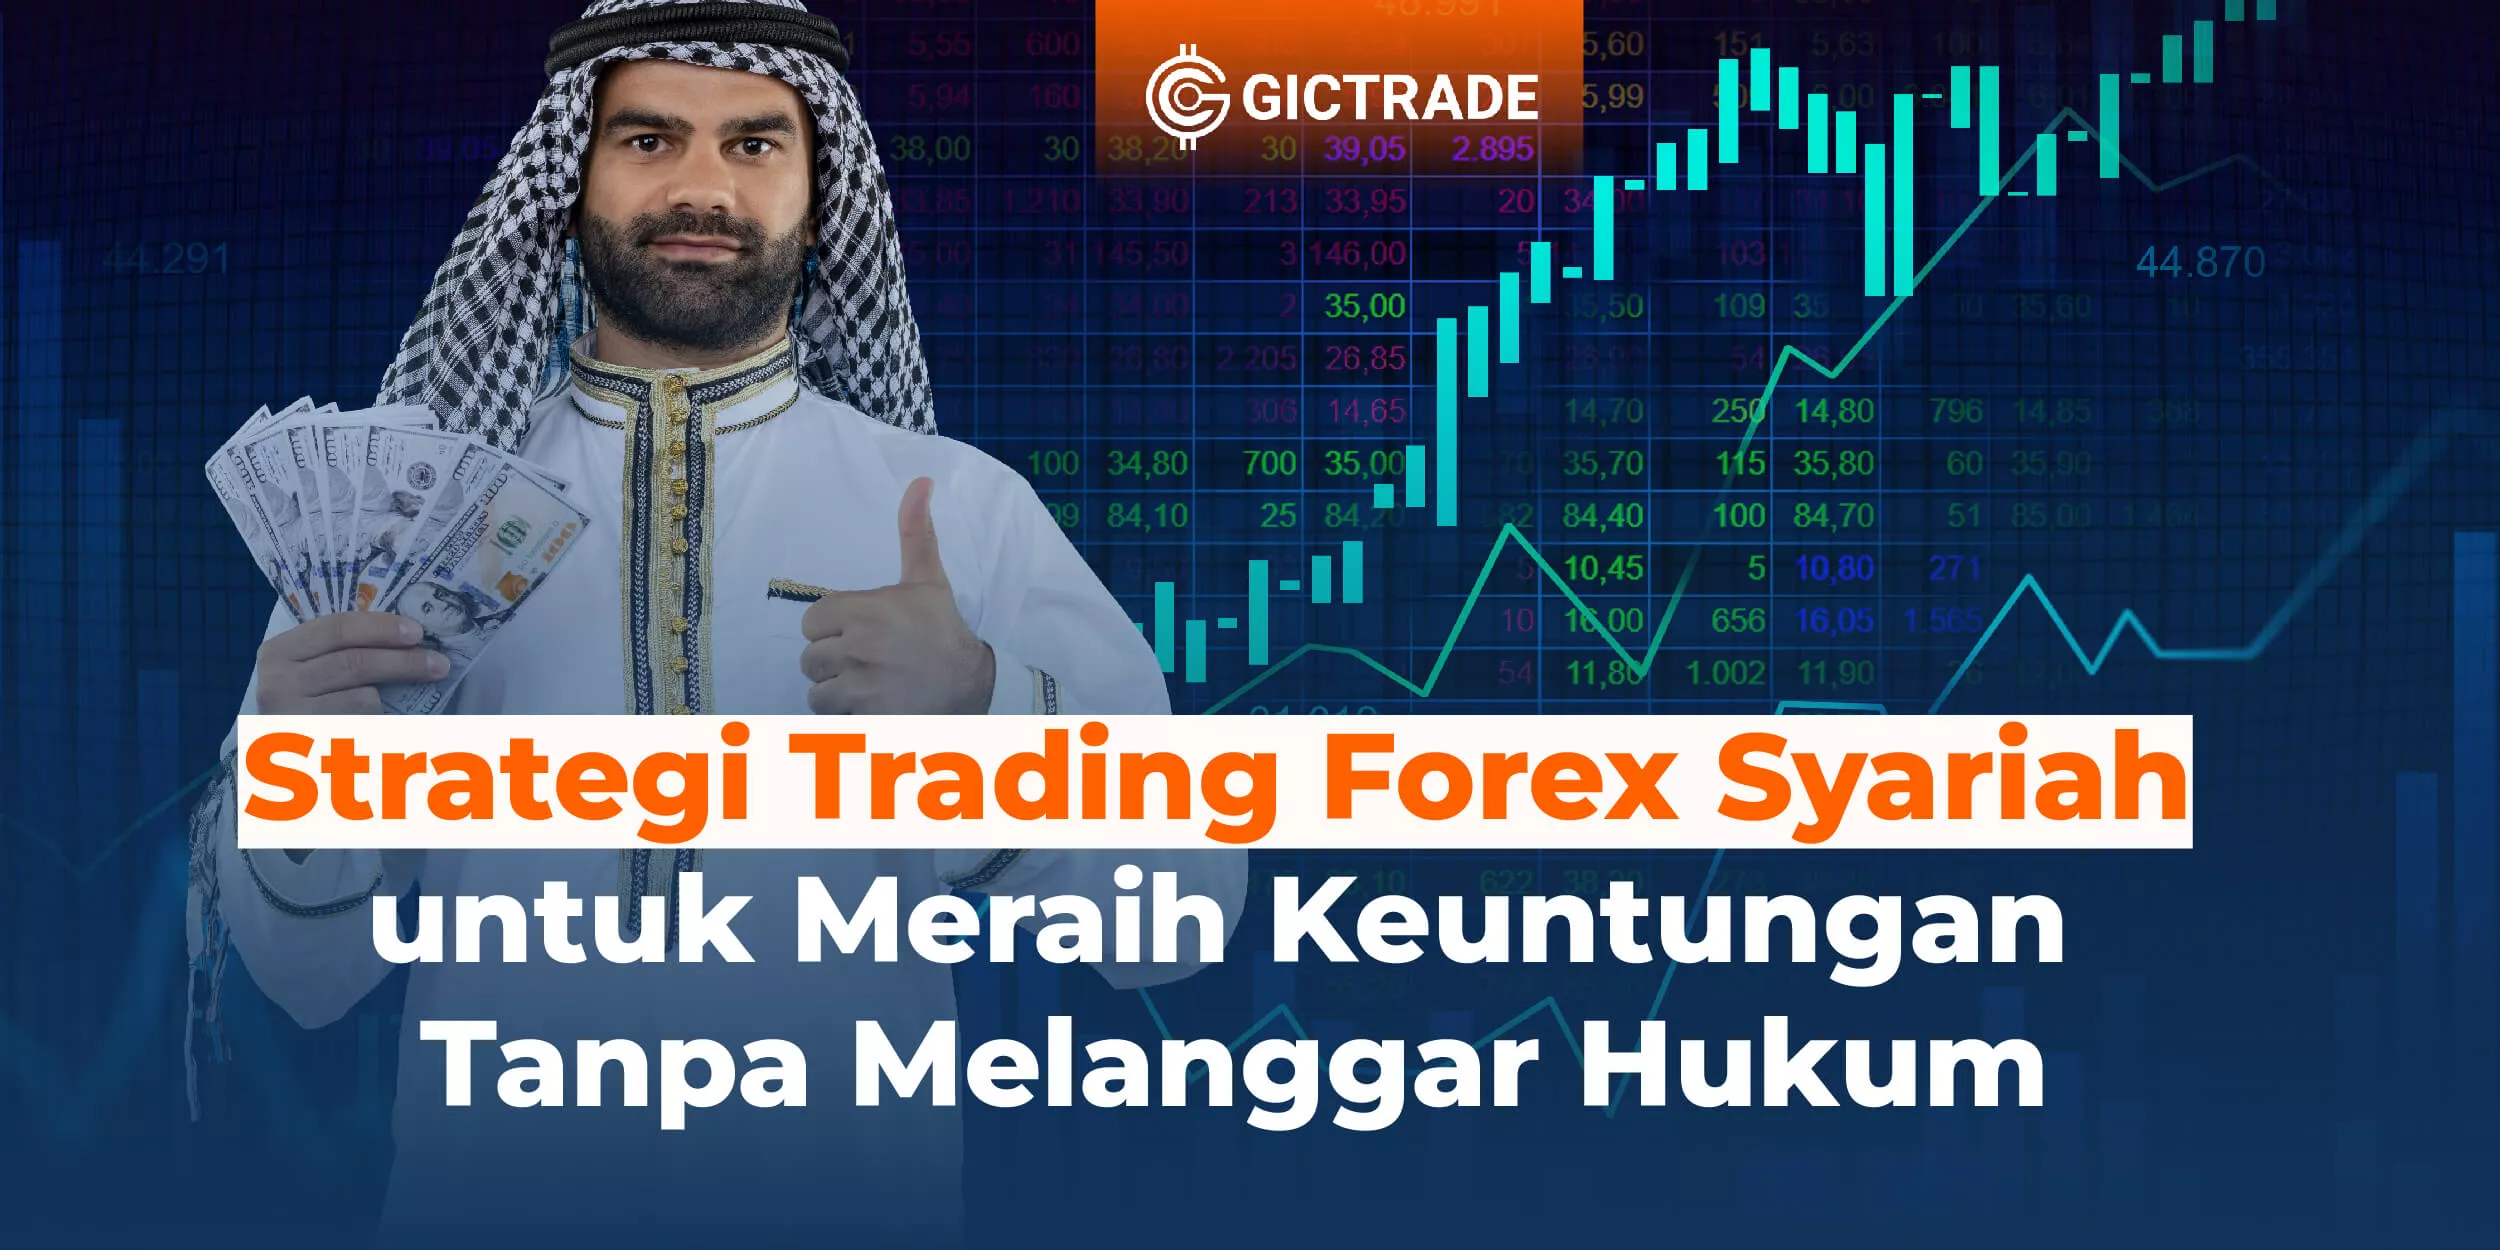 trading forex syariah